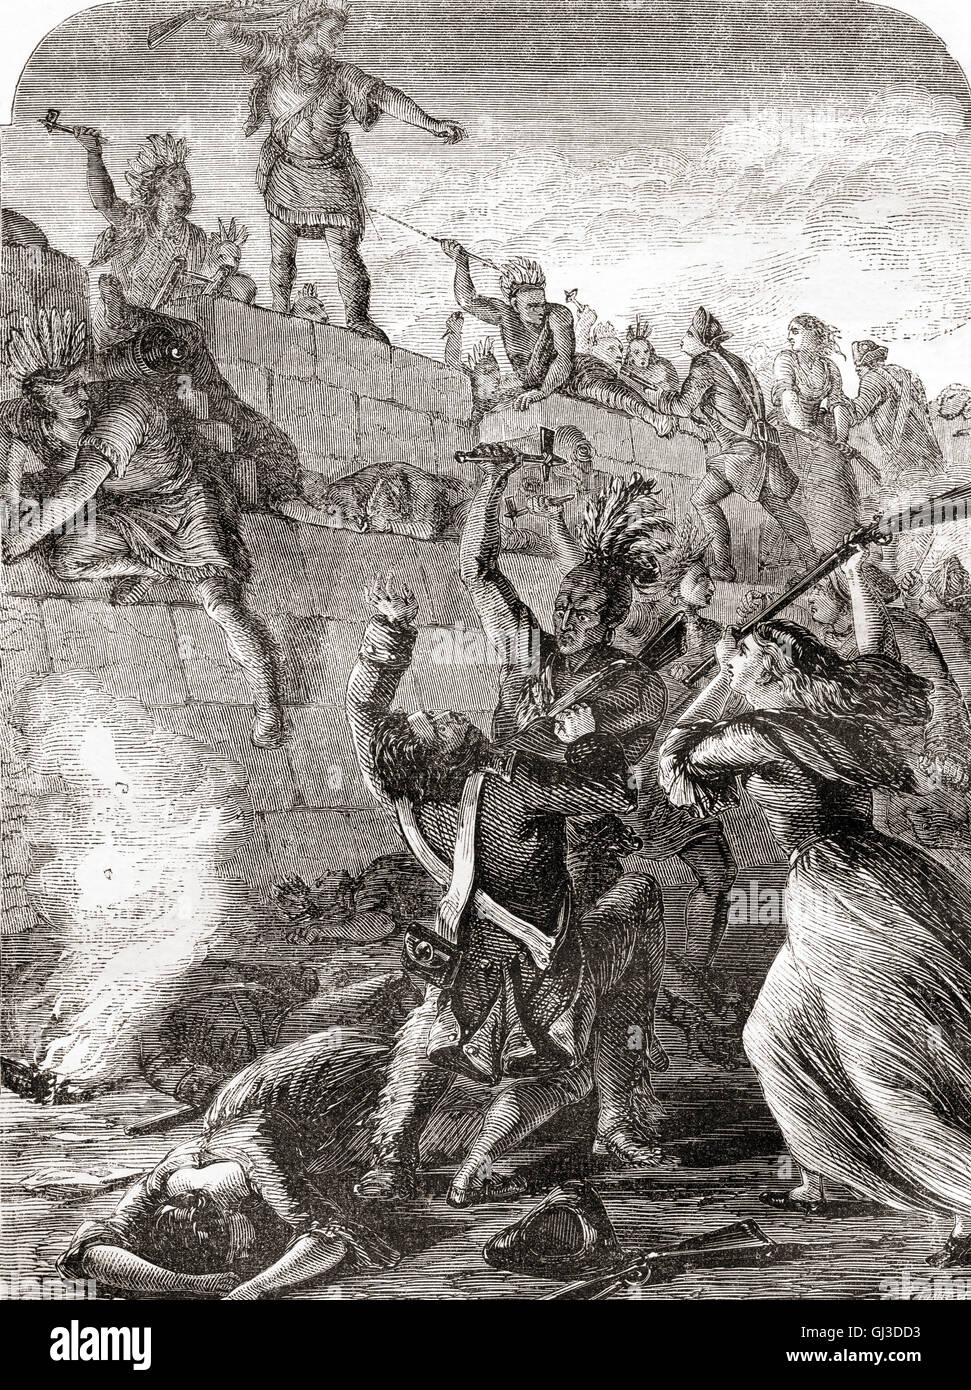 La bataille du Wyoming Wyoming aka le massacre pendant la guerre de l'indépendance entre loyalistes et patriotes américains accompagnés de raiders Iroquois qui ont eu lieu dans le Wyoming Valley de Pennsylvanie le 3 juillet 1778. Banque D'Images